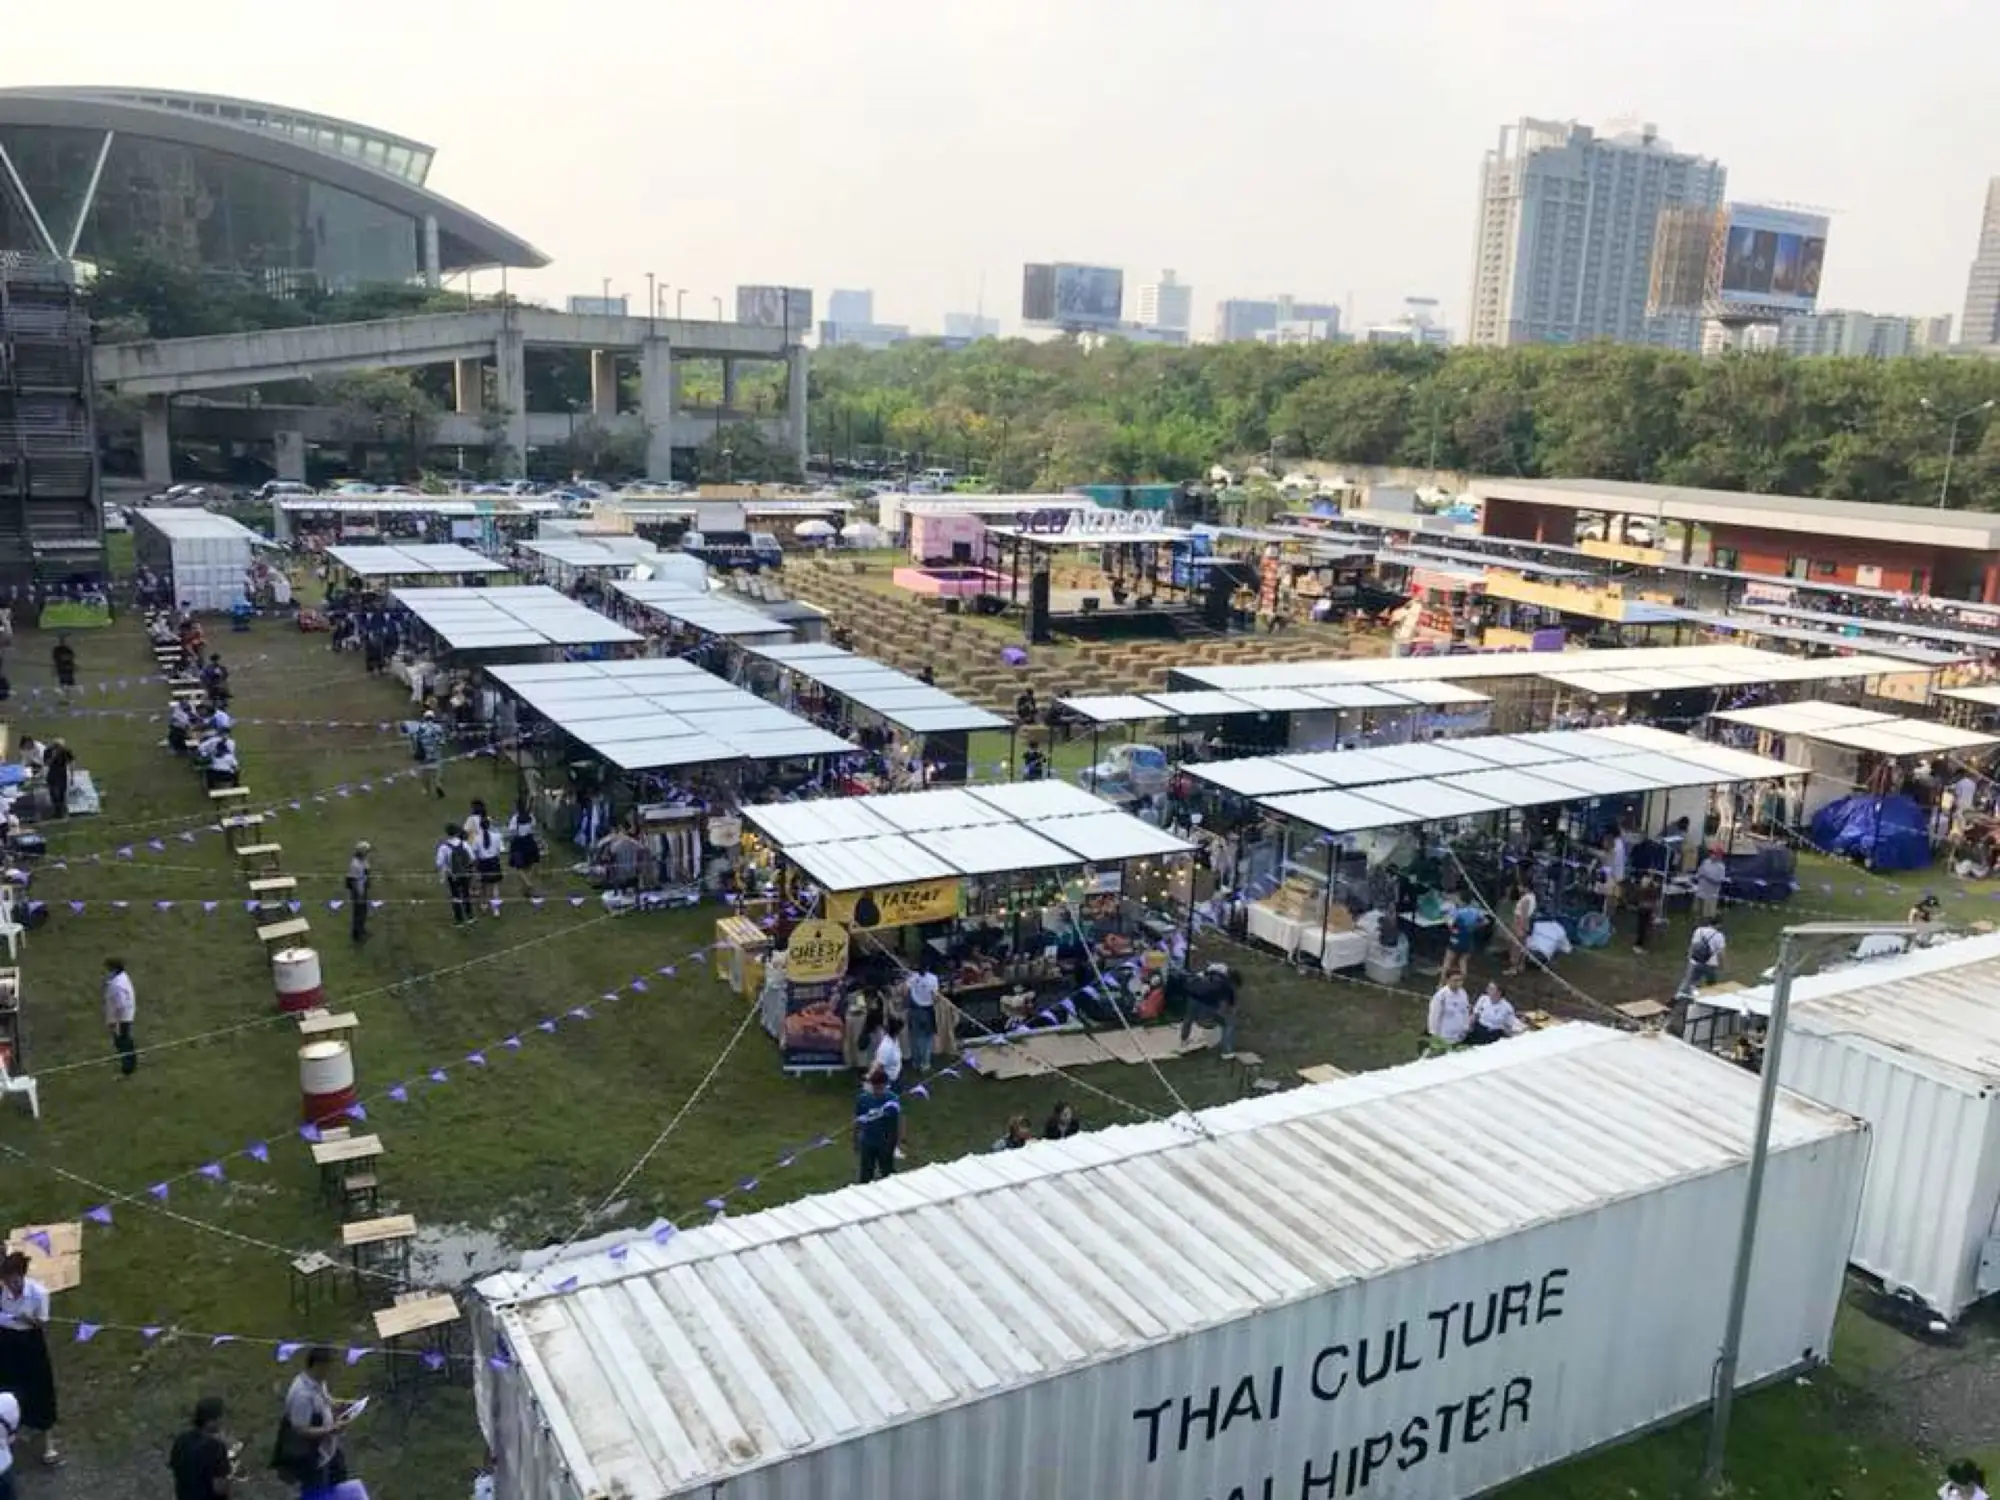 曼谷创意货柜市集ARTBOX携手SCB银行(2020.9.4更新图片)